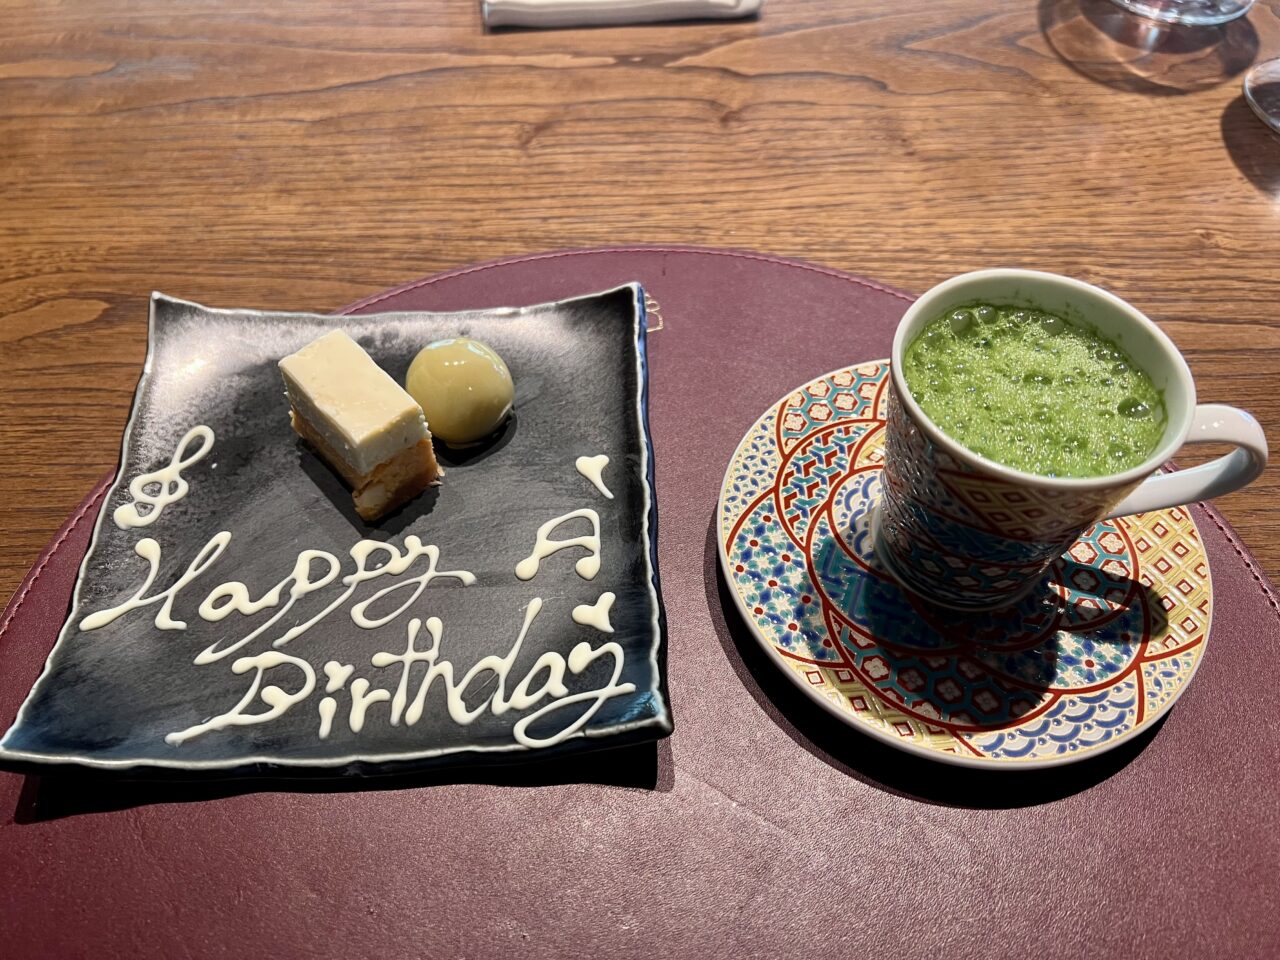 翠嵐ラグジュアリーコレクションホテル京都「京翠嵐」の季の佳(8,855円)コースのデザートです。本日の甘味、ケーキと抹茶です。